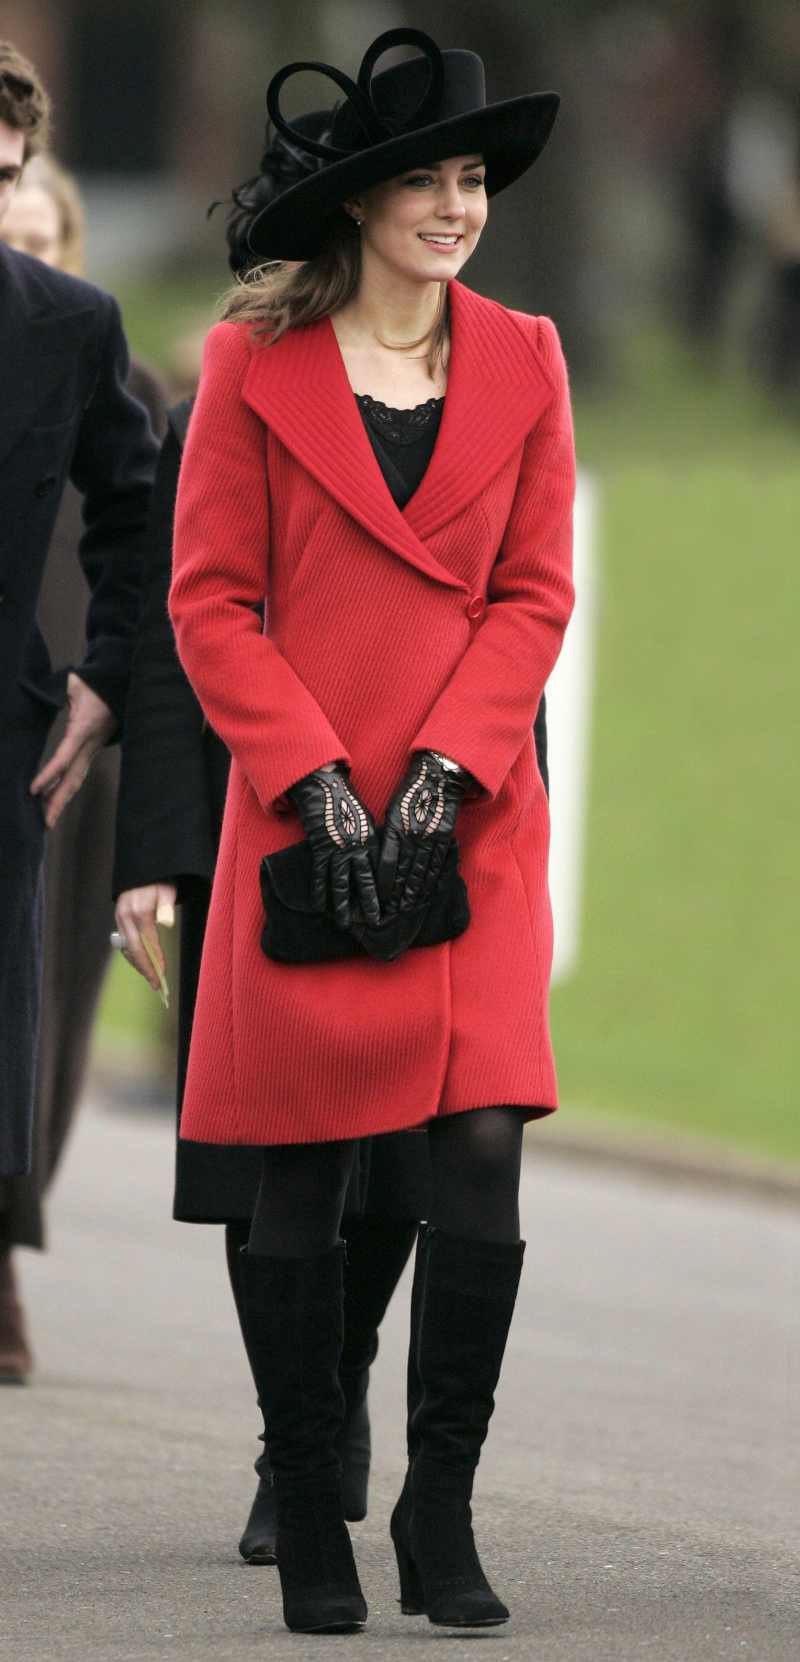 Kate Middleton's Style Evolution - December 2006